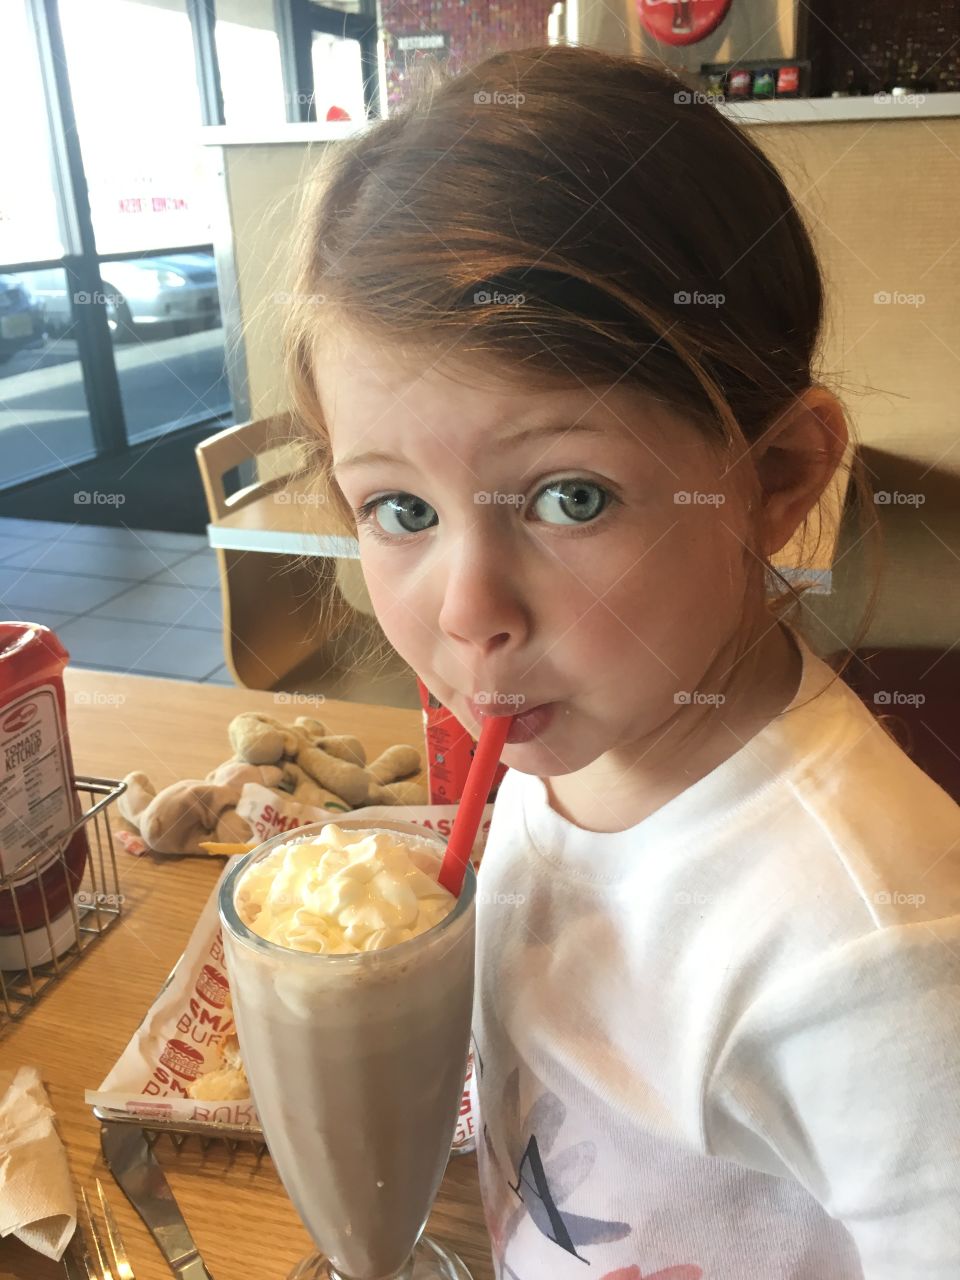 Beautiful little girl with milkshake